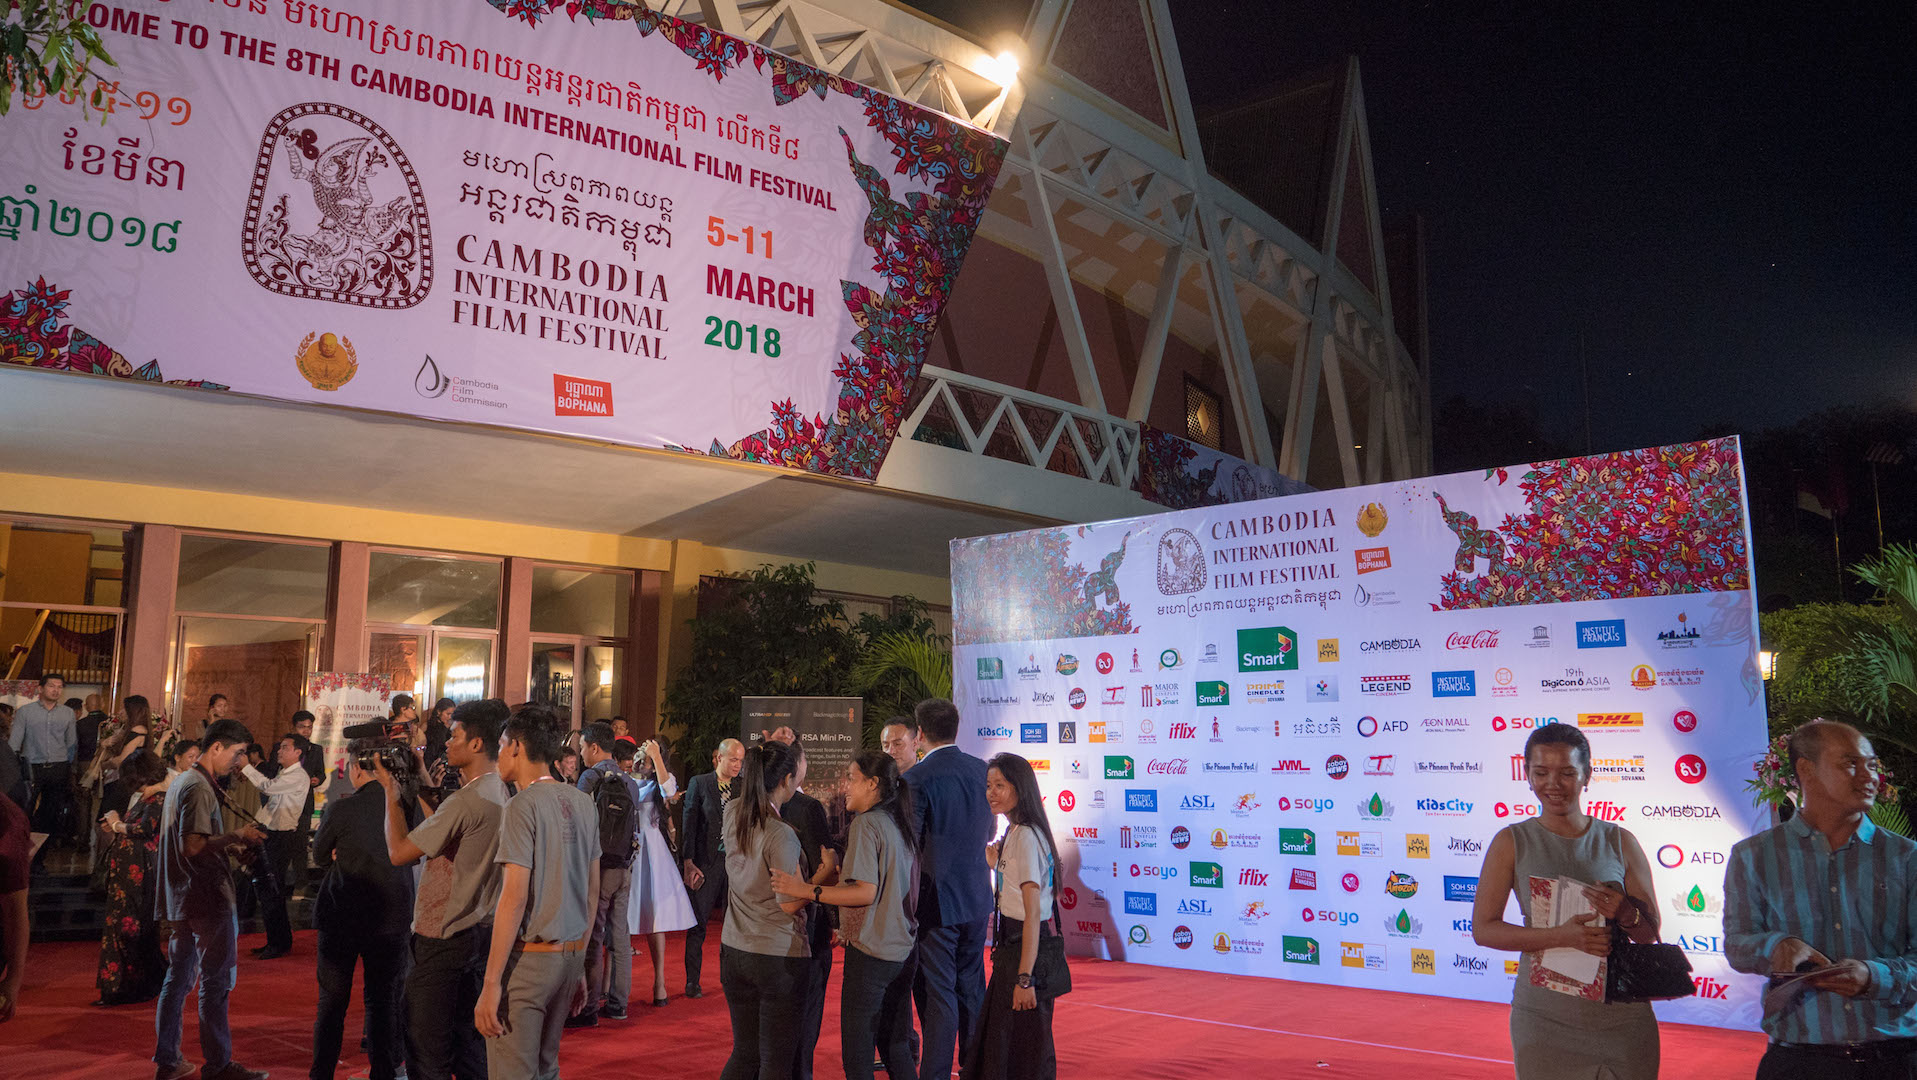 小特集 世界の映画祭 プノンペン カンボジア国際映画祭18 現場レポートtext 歌川達人 Neoneo Web